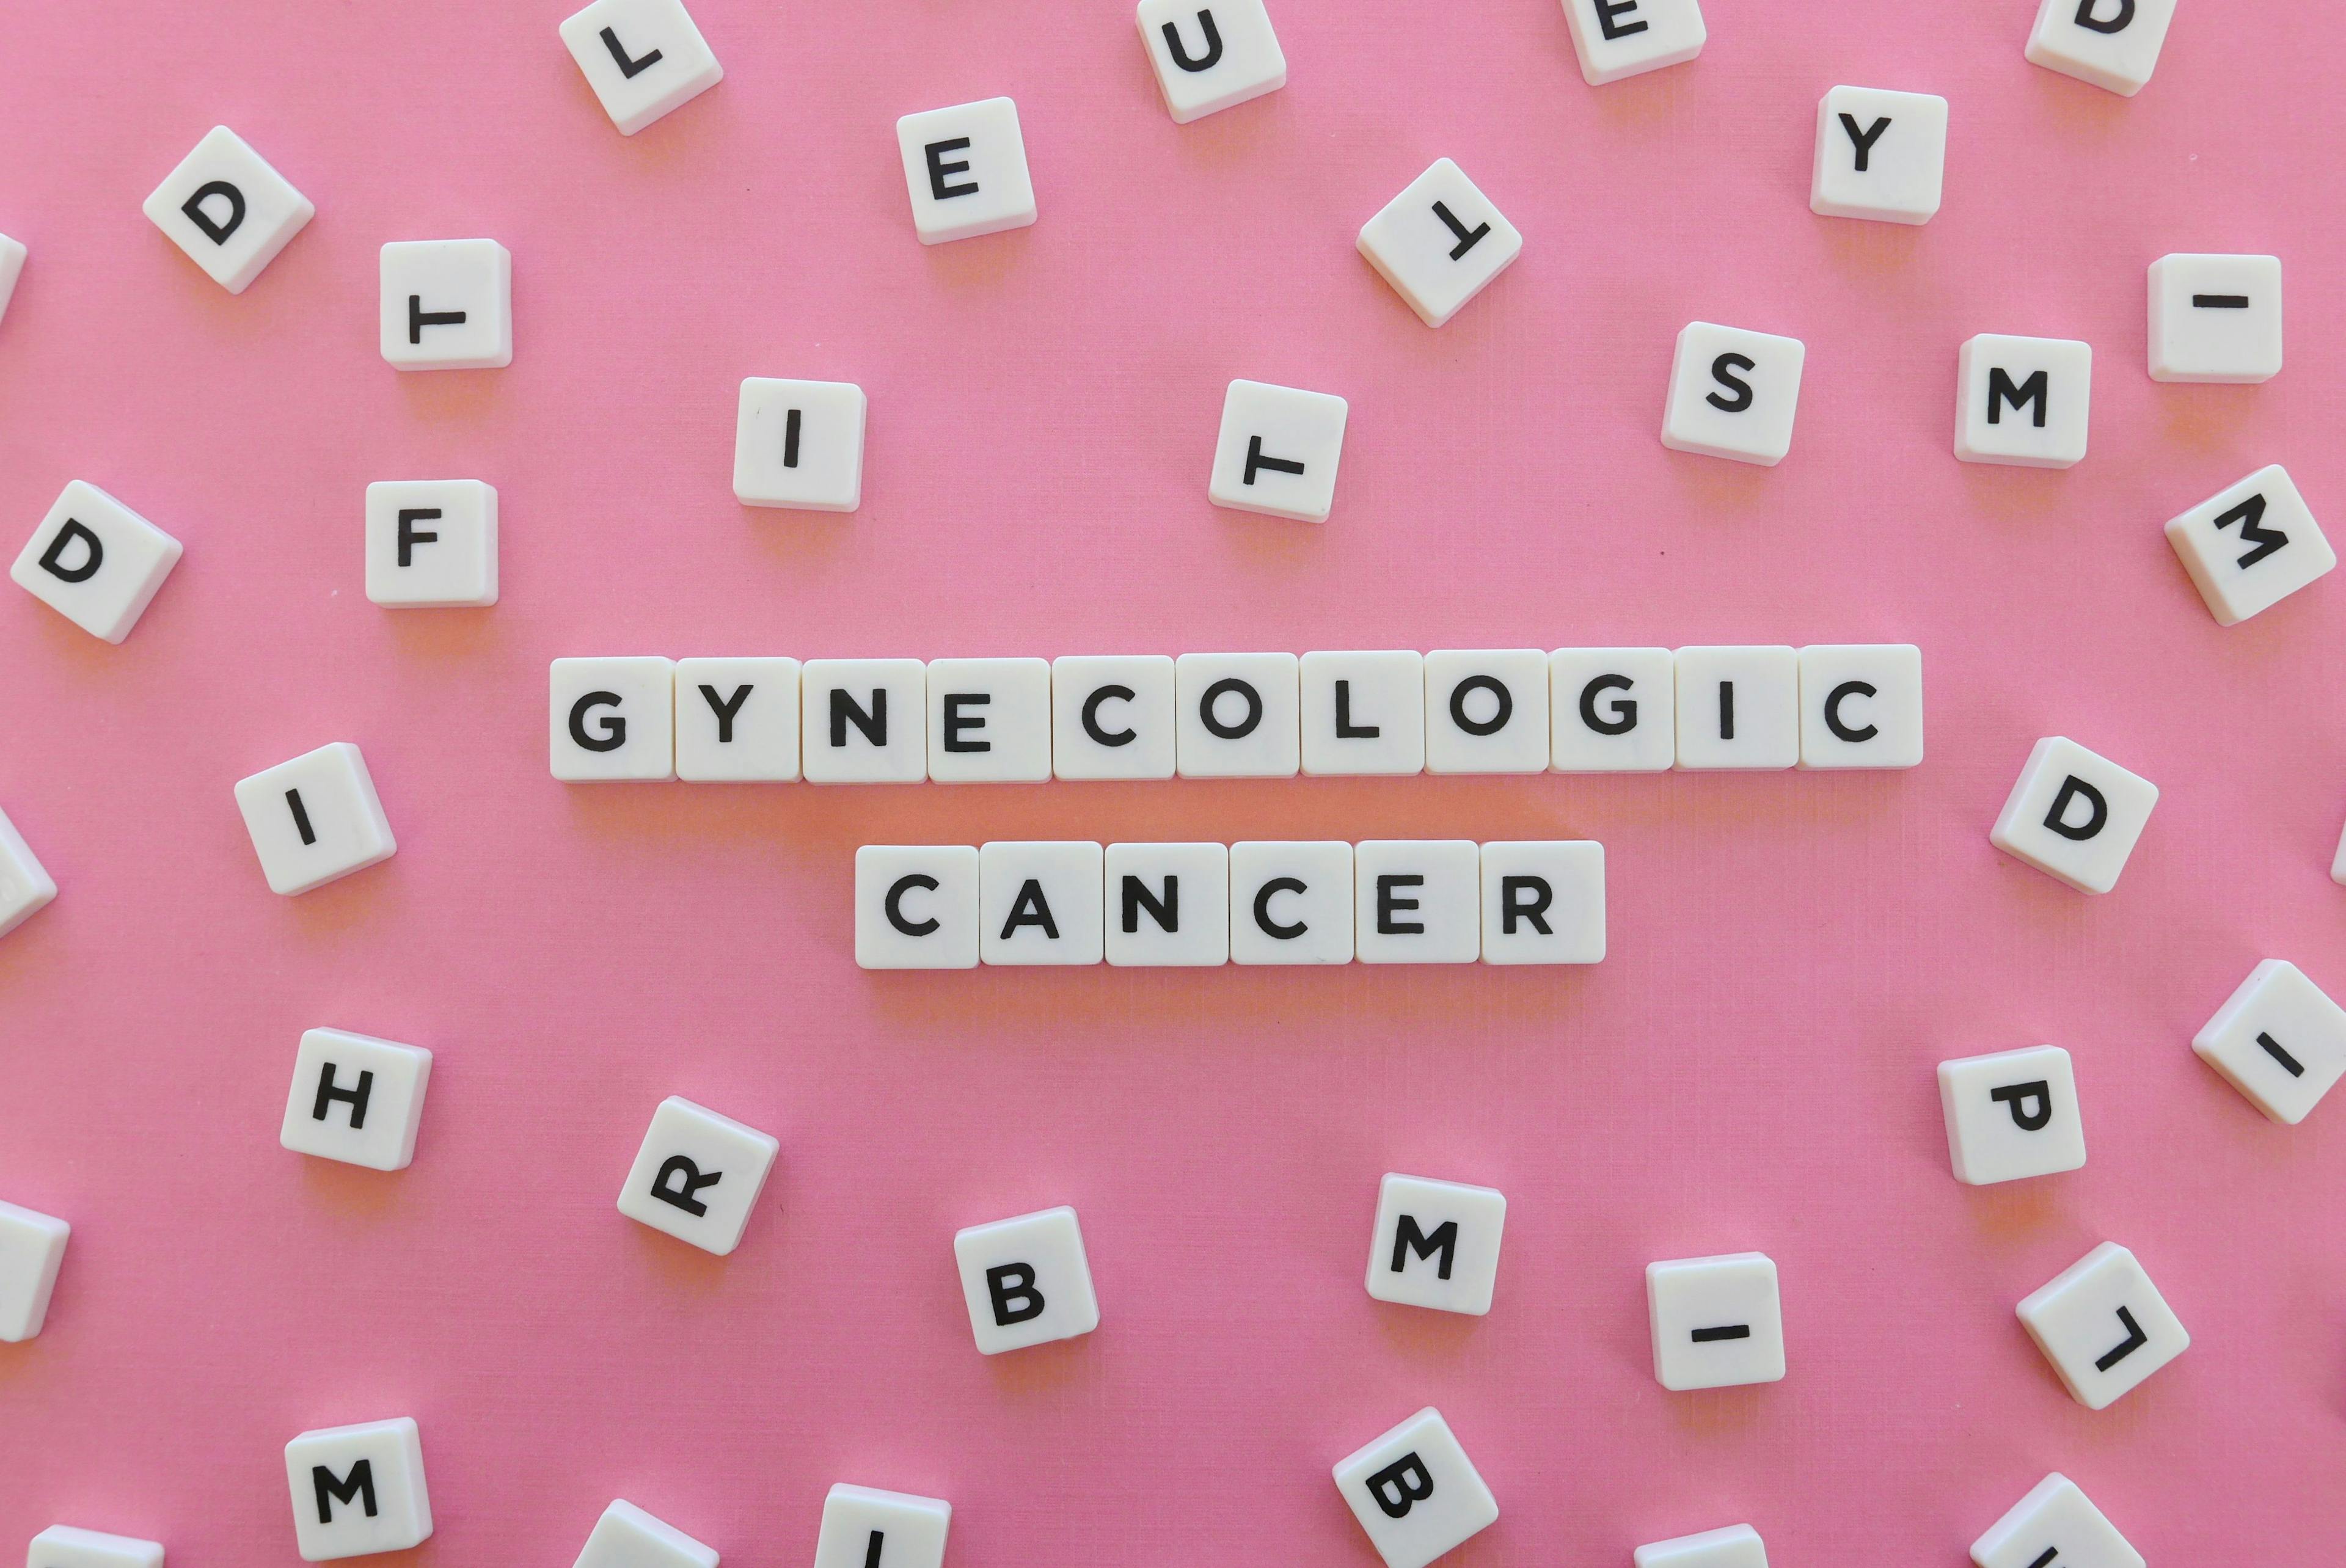 Gynecolic cancer